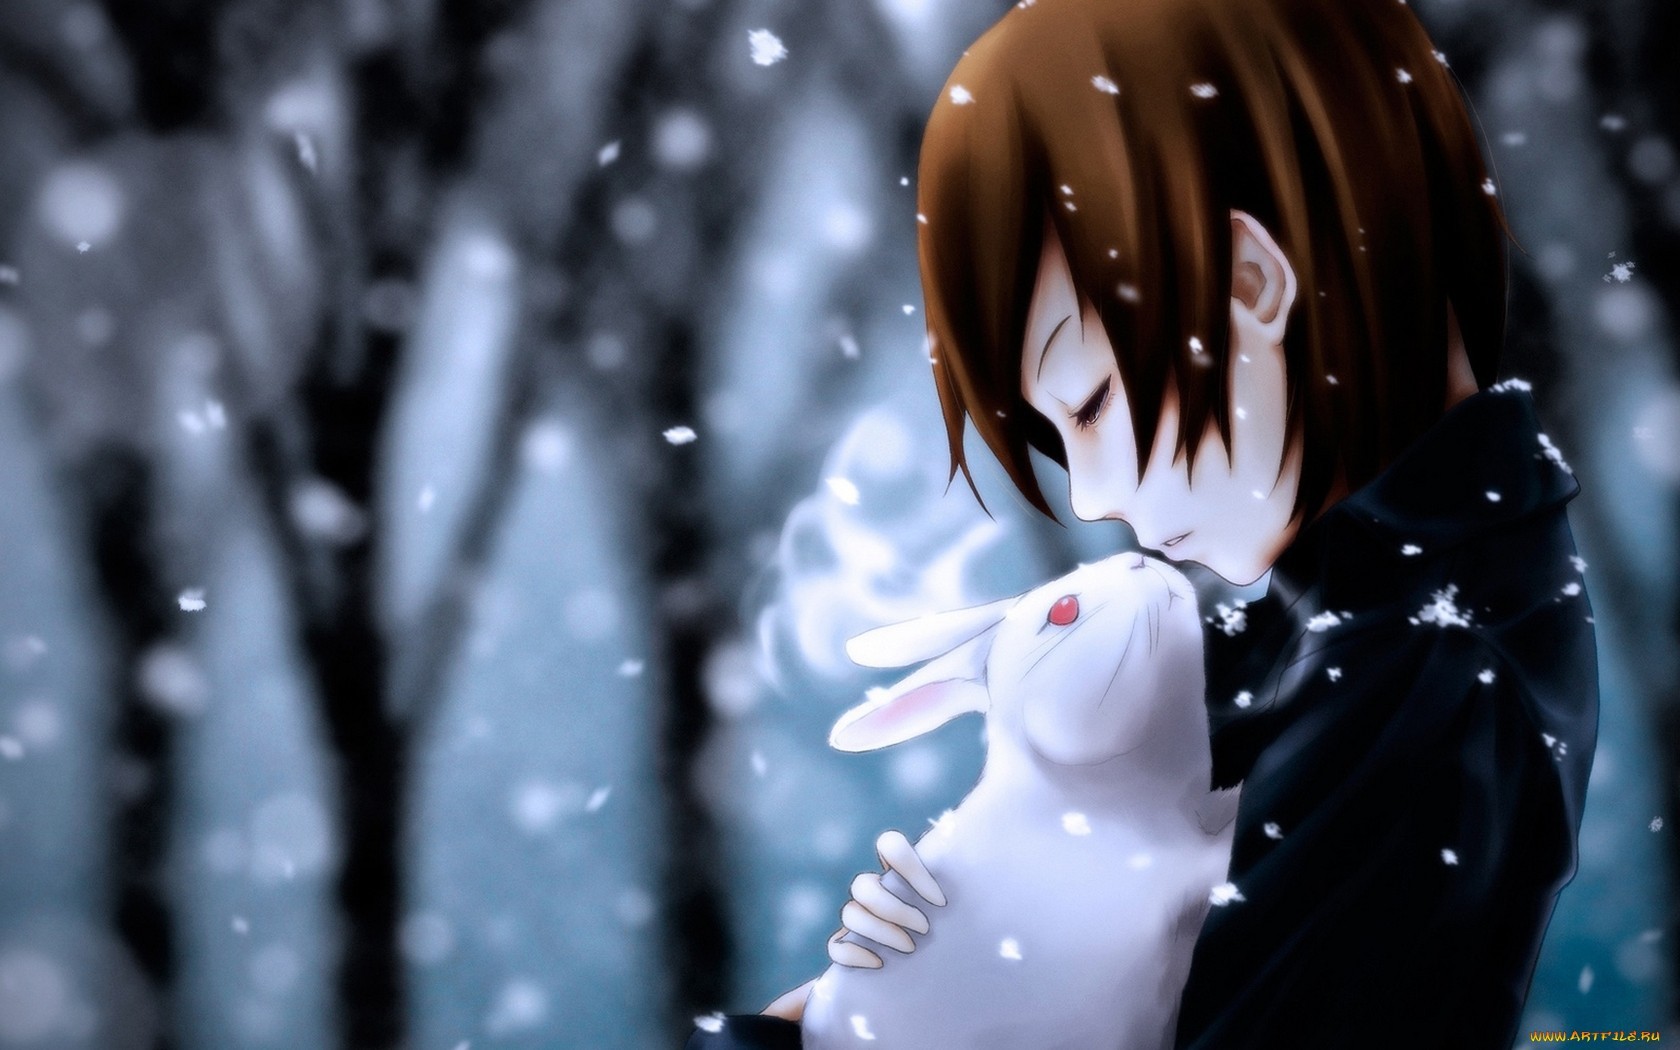 267kib, 1680x1050, Chico Abrazando A Un Conejo-940683 - Anime Guy With Rabbit , HD Wallpaper & Backgrounds